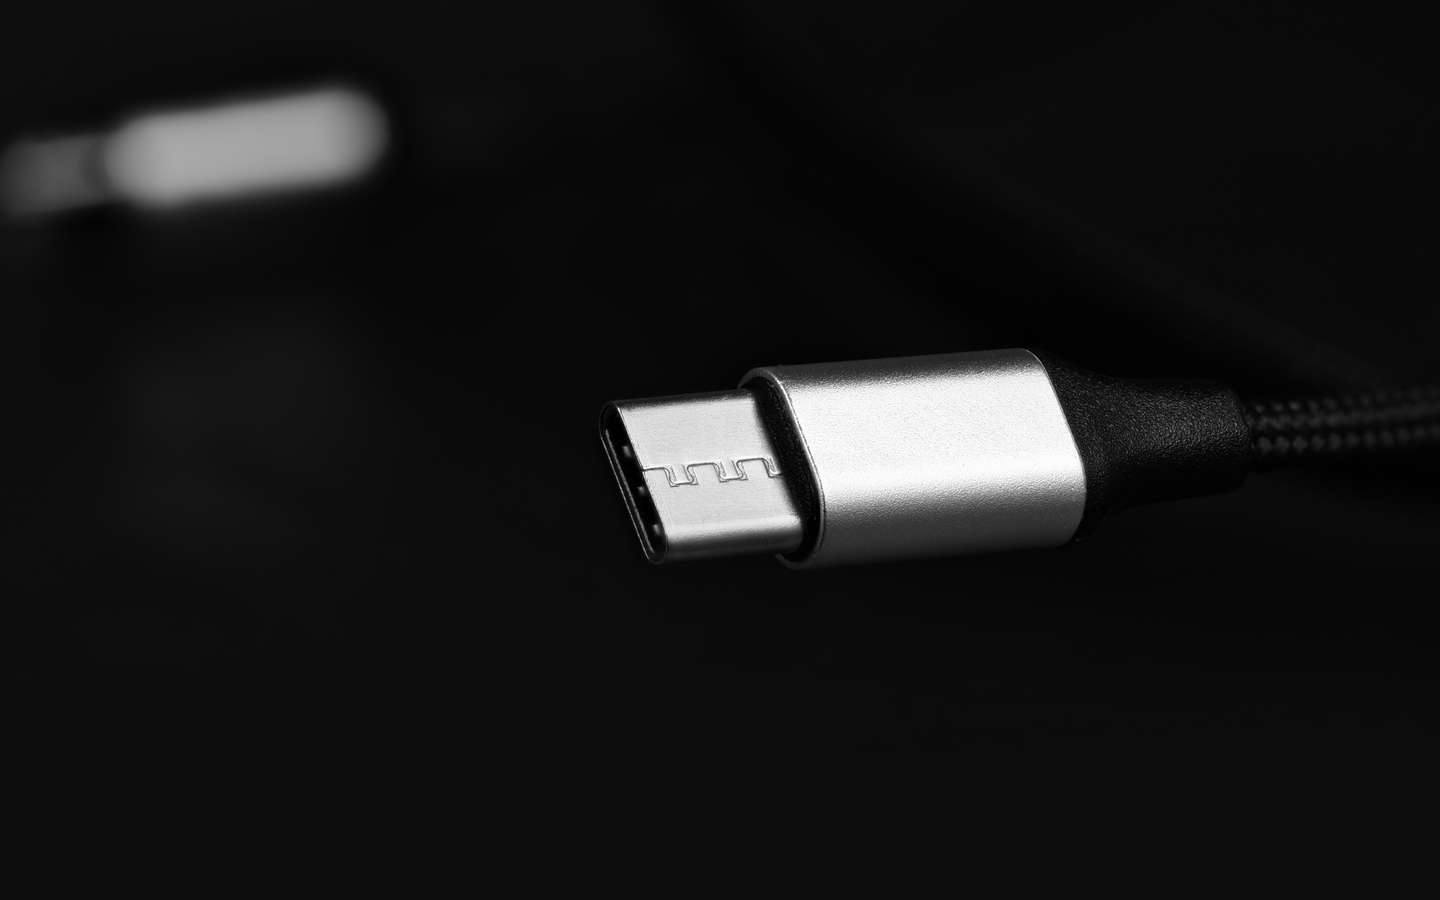 L'Union européenne va forcer Apple à passer à l'USB-C pour ses